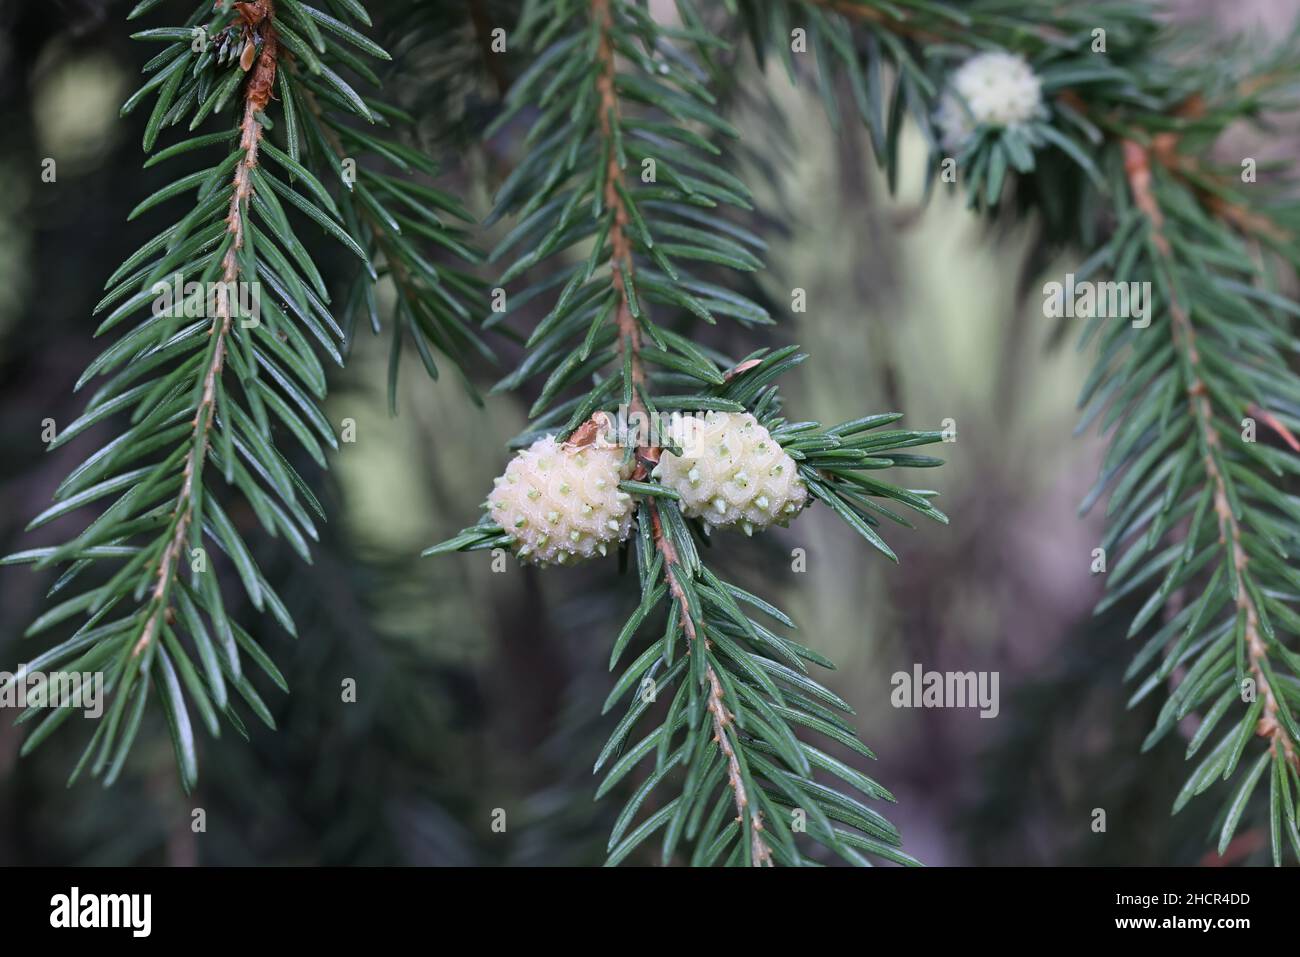 Adelges laricis, bekannt als blass Fichtengall adelgid, eine Pflanze, die auf der europäischen Fichte, Picea abies, Parasitengallen bildet Stockfoto